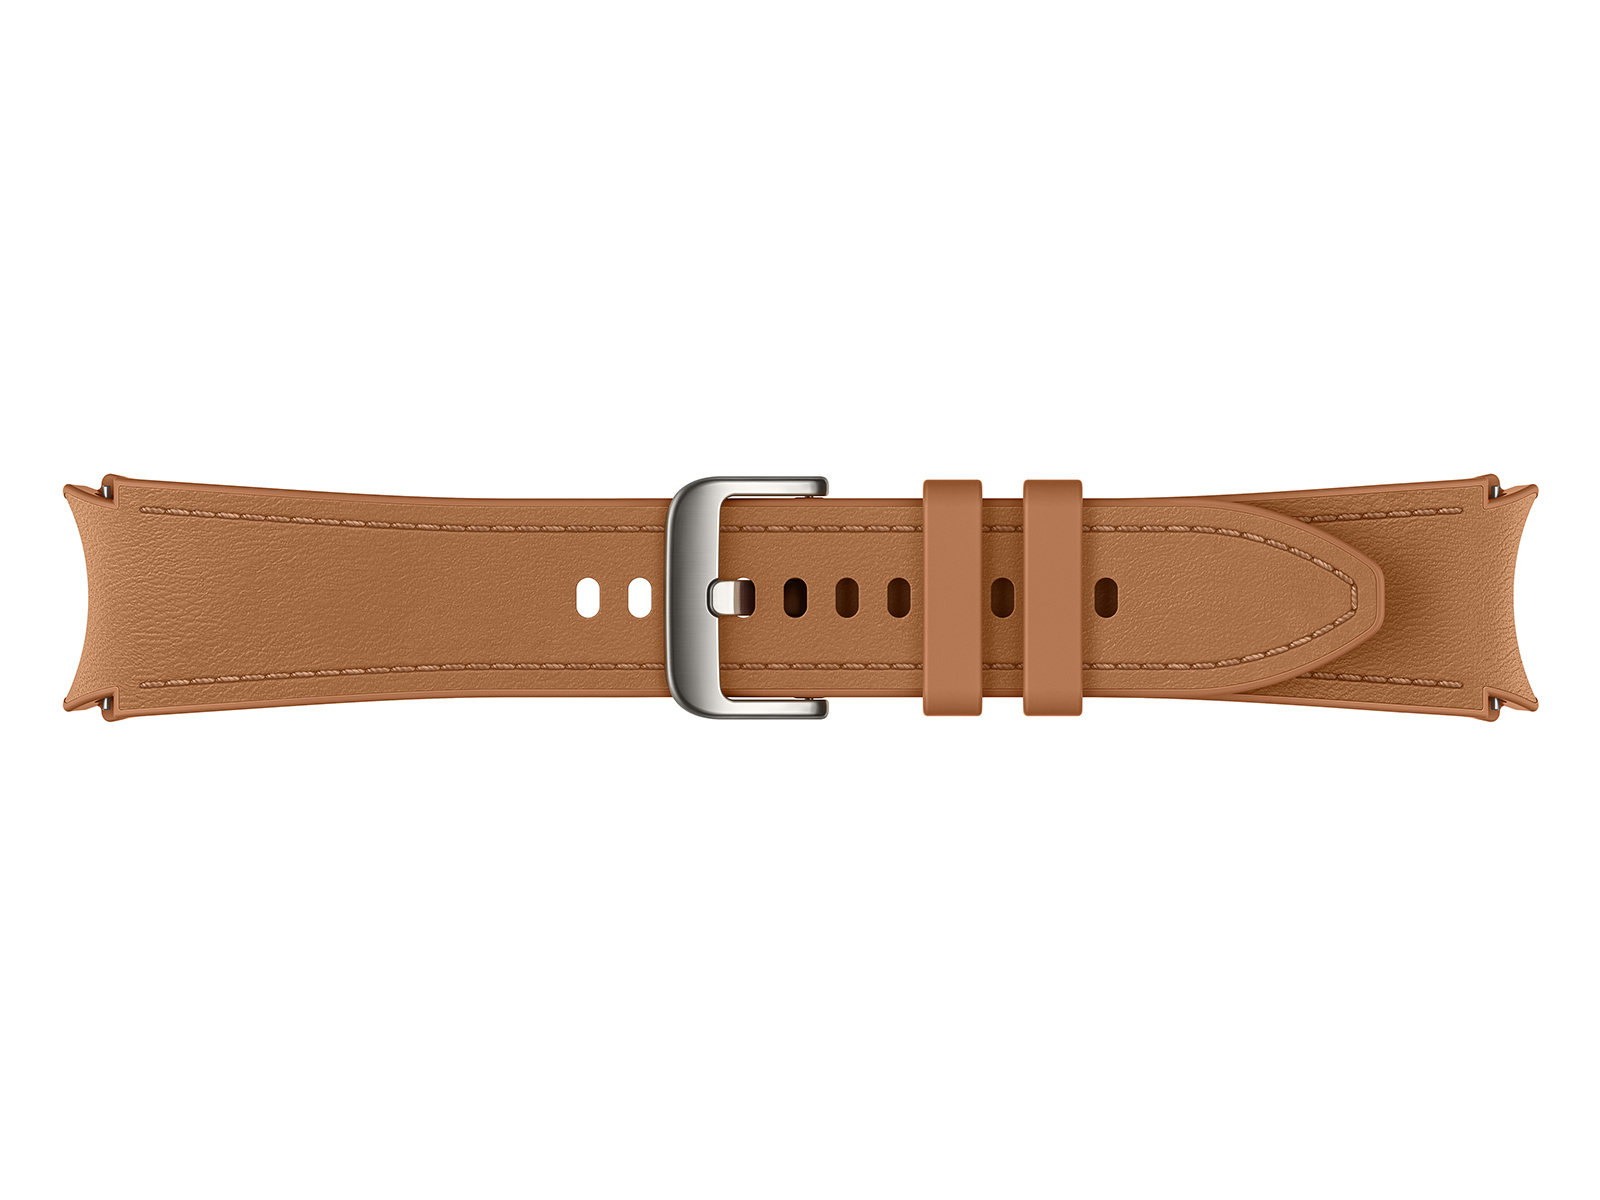 Galaxy Watch Hybrid Eco-Leather T-Buckle Band, M/L, Indigo Mobile  Accessories - ET-SHR96LNEGUJ